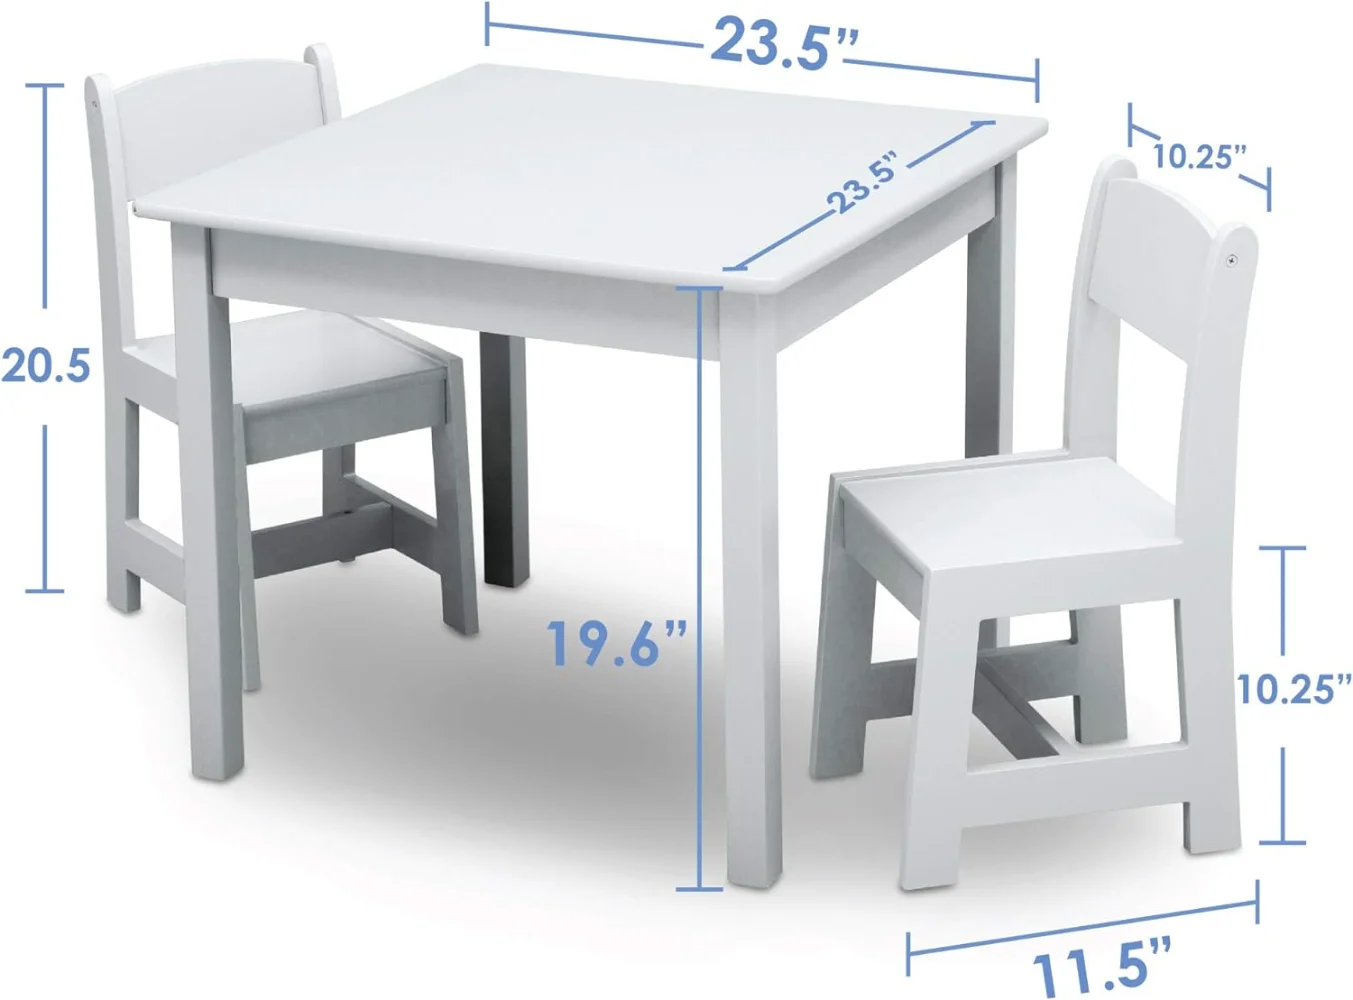 Stół z drewna i zestaw krzeseł dla dzieci MySize (w zestawie 2 krzesła)-idealne do sztuki i rzemiosła, przekąsek, więcej-złoty certyfikat Greenguard